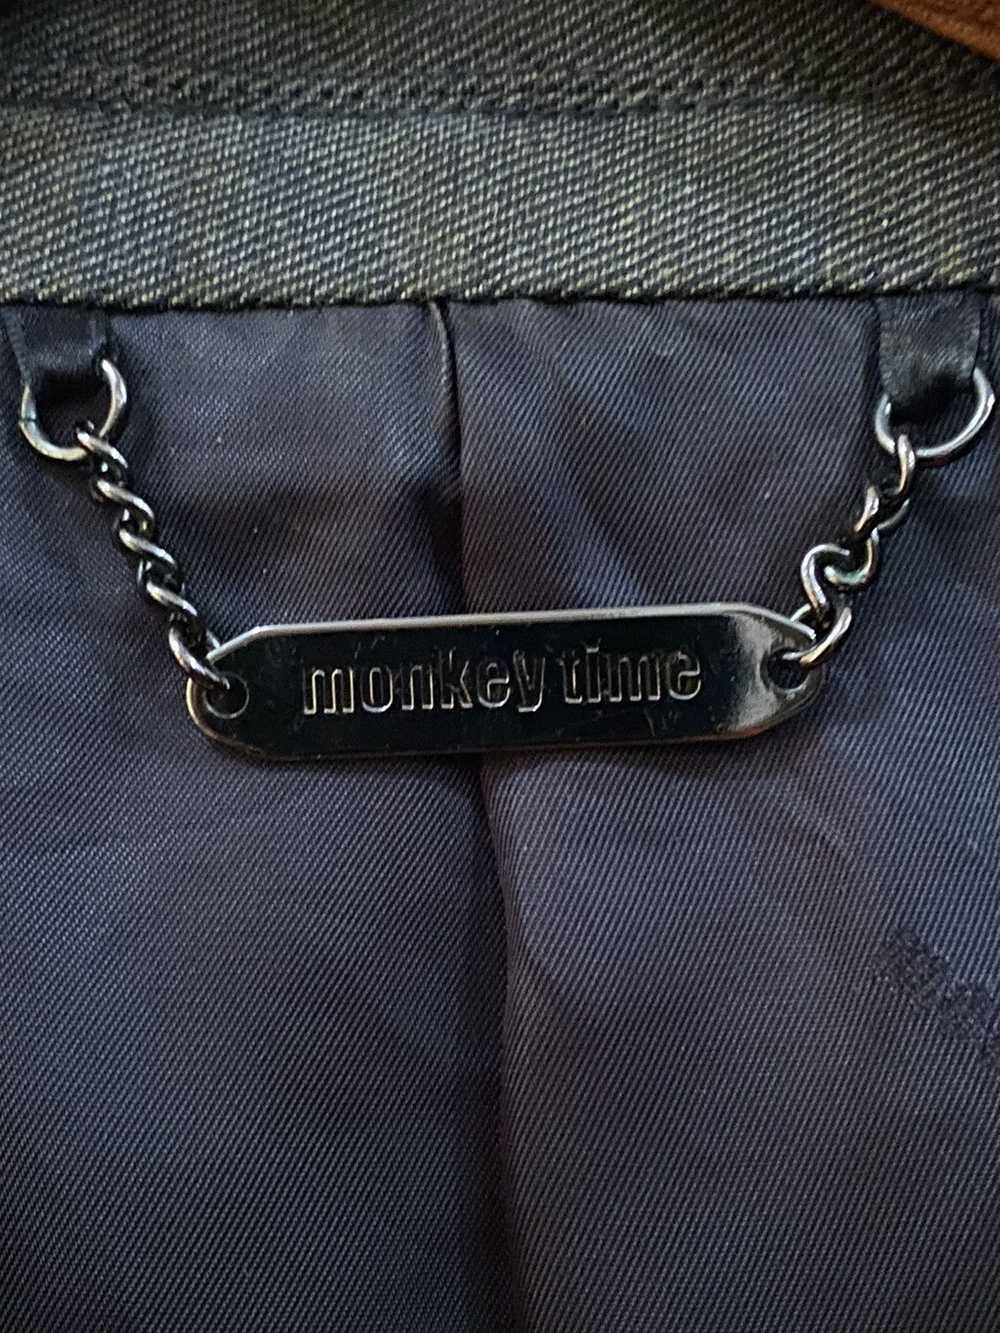 Monkey Time Monkey Time Jacket - image 9